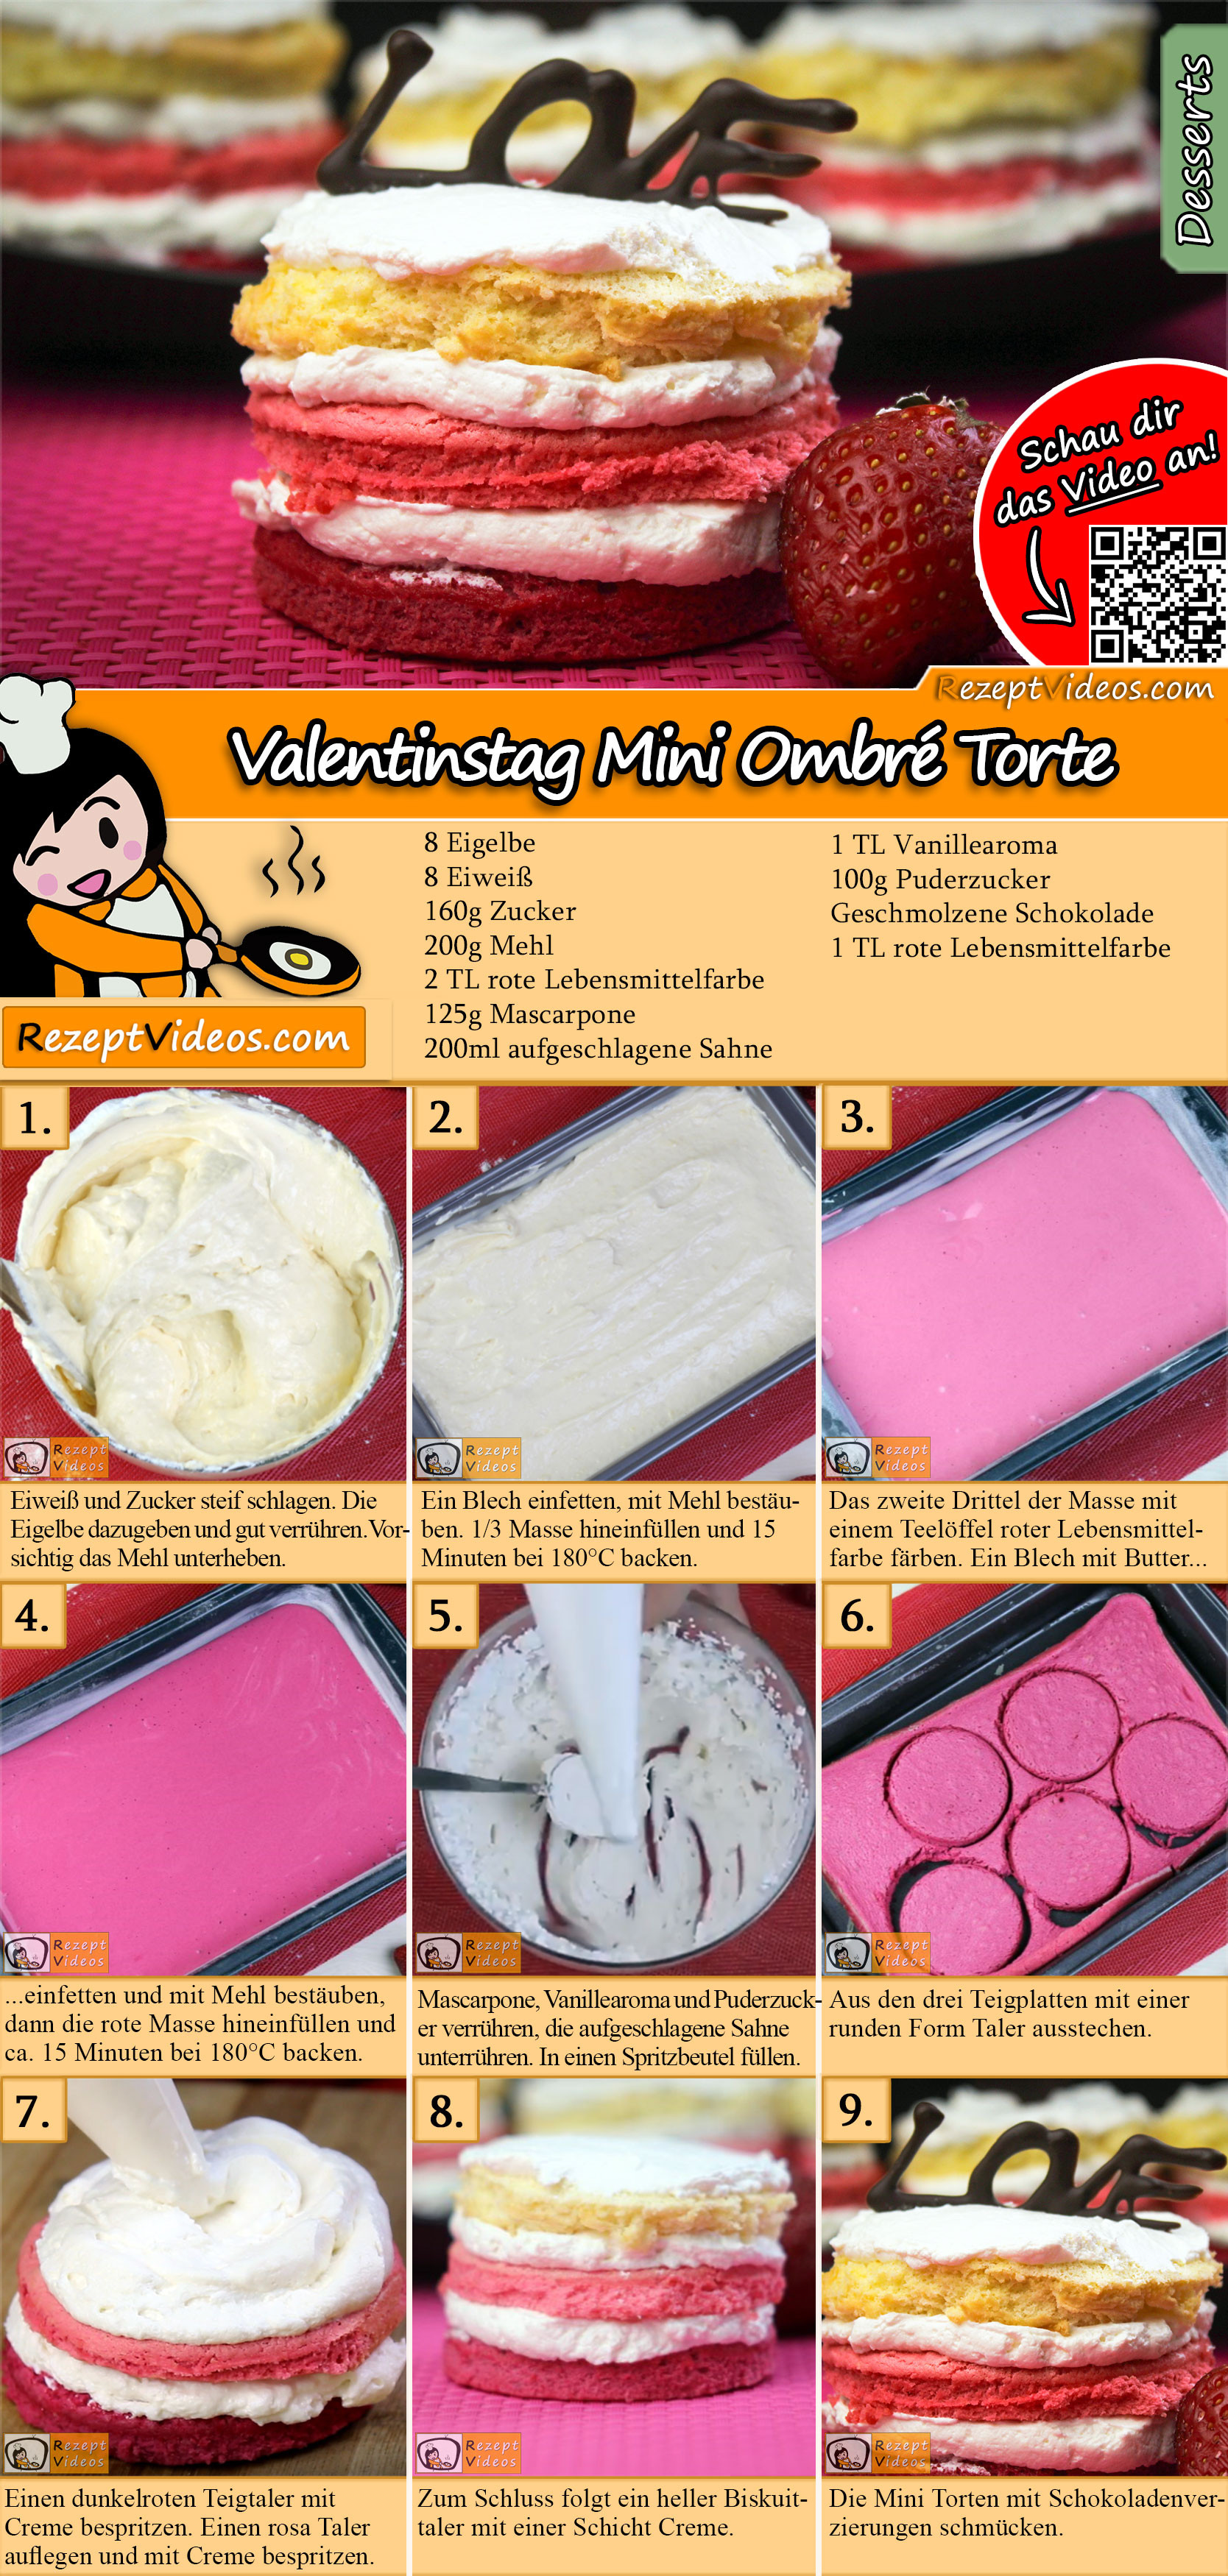 Valentinstag Mini Ombré Torte Rezept mit Video